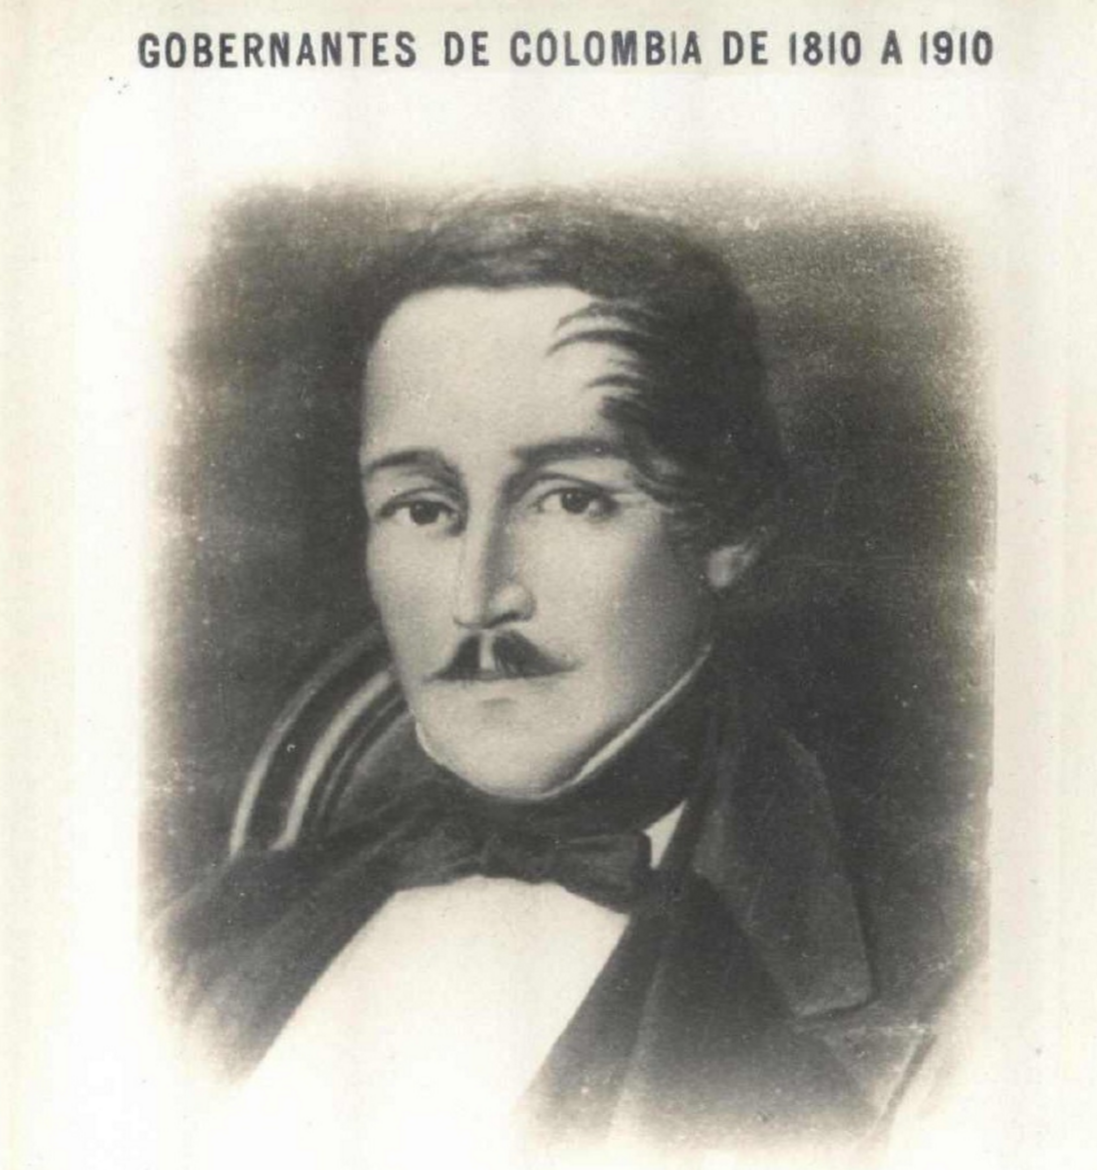 imagenes de los presidentes de colombia desde 1810